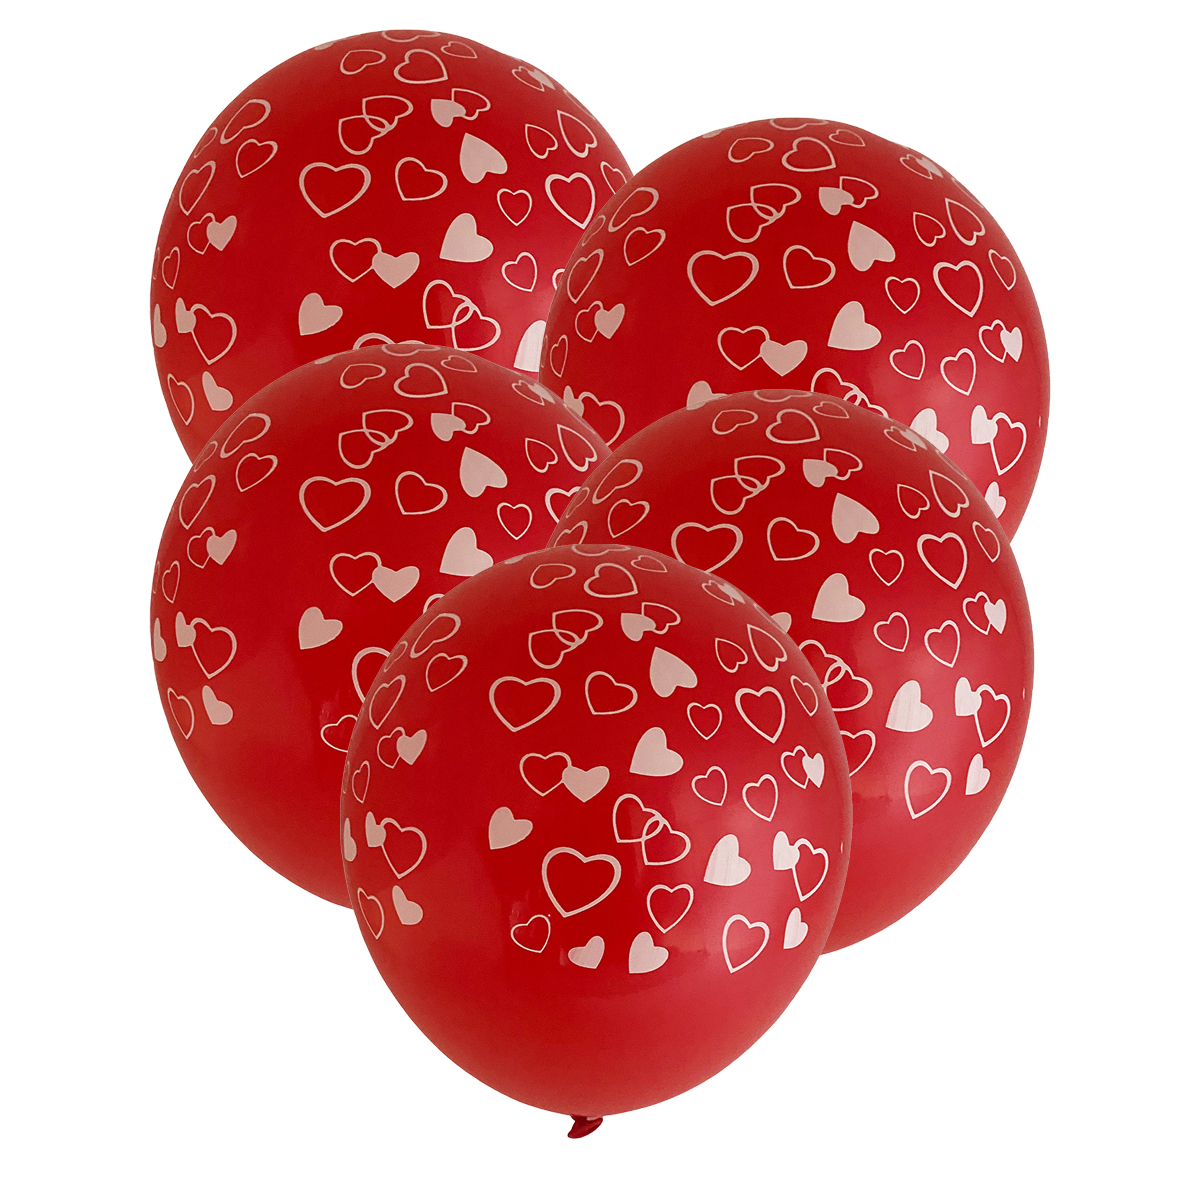 Balão de Latex Vermelho com Corações Brancos - 5 unidades